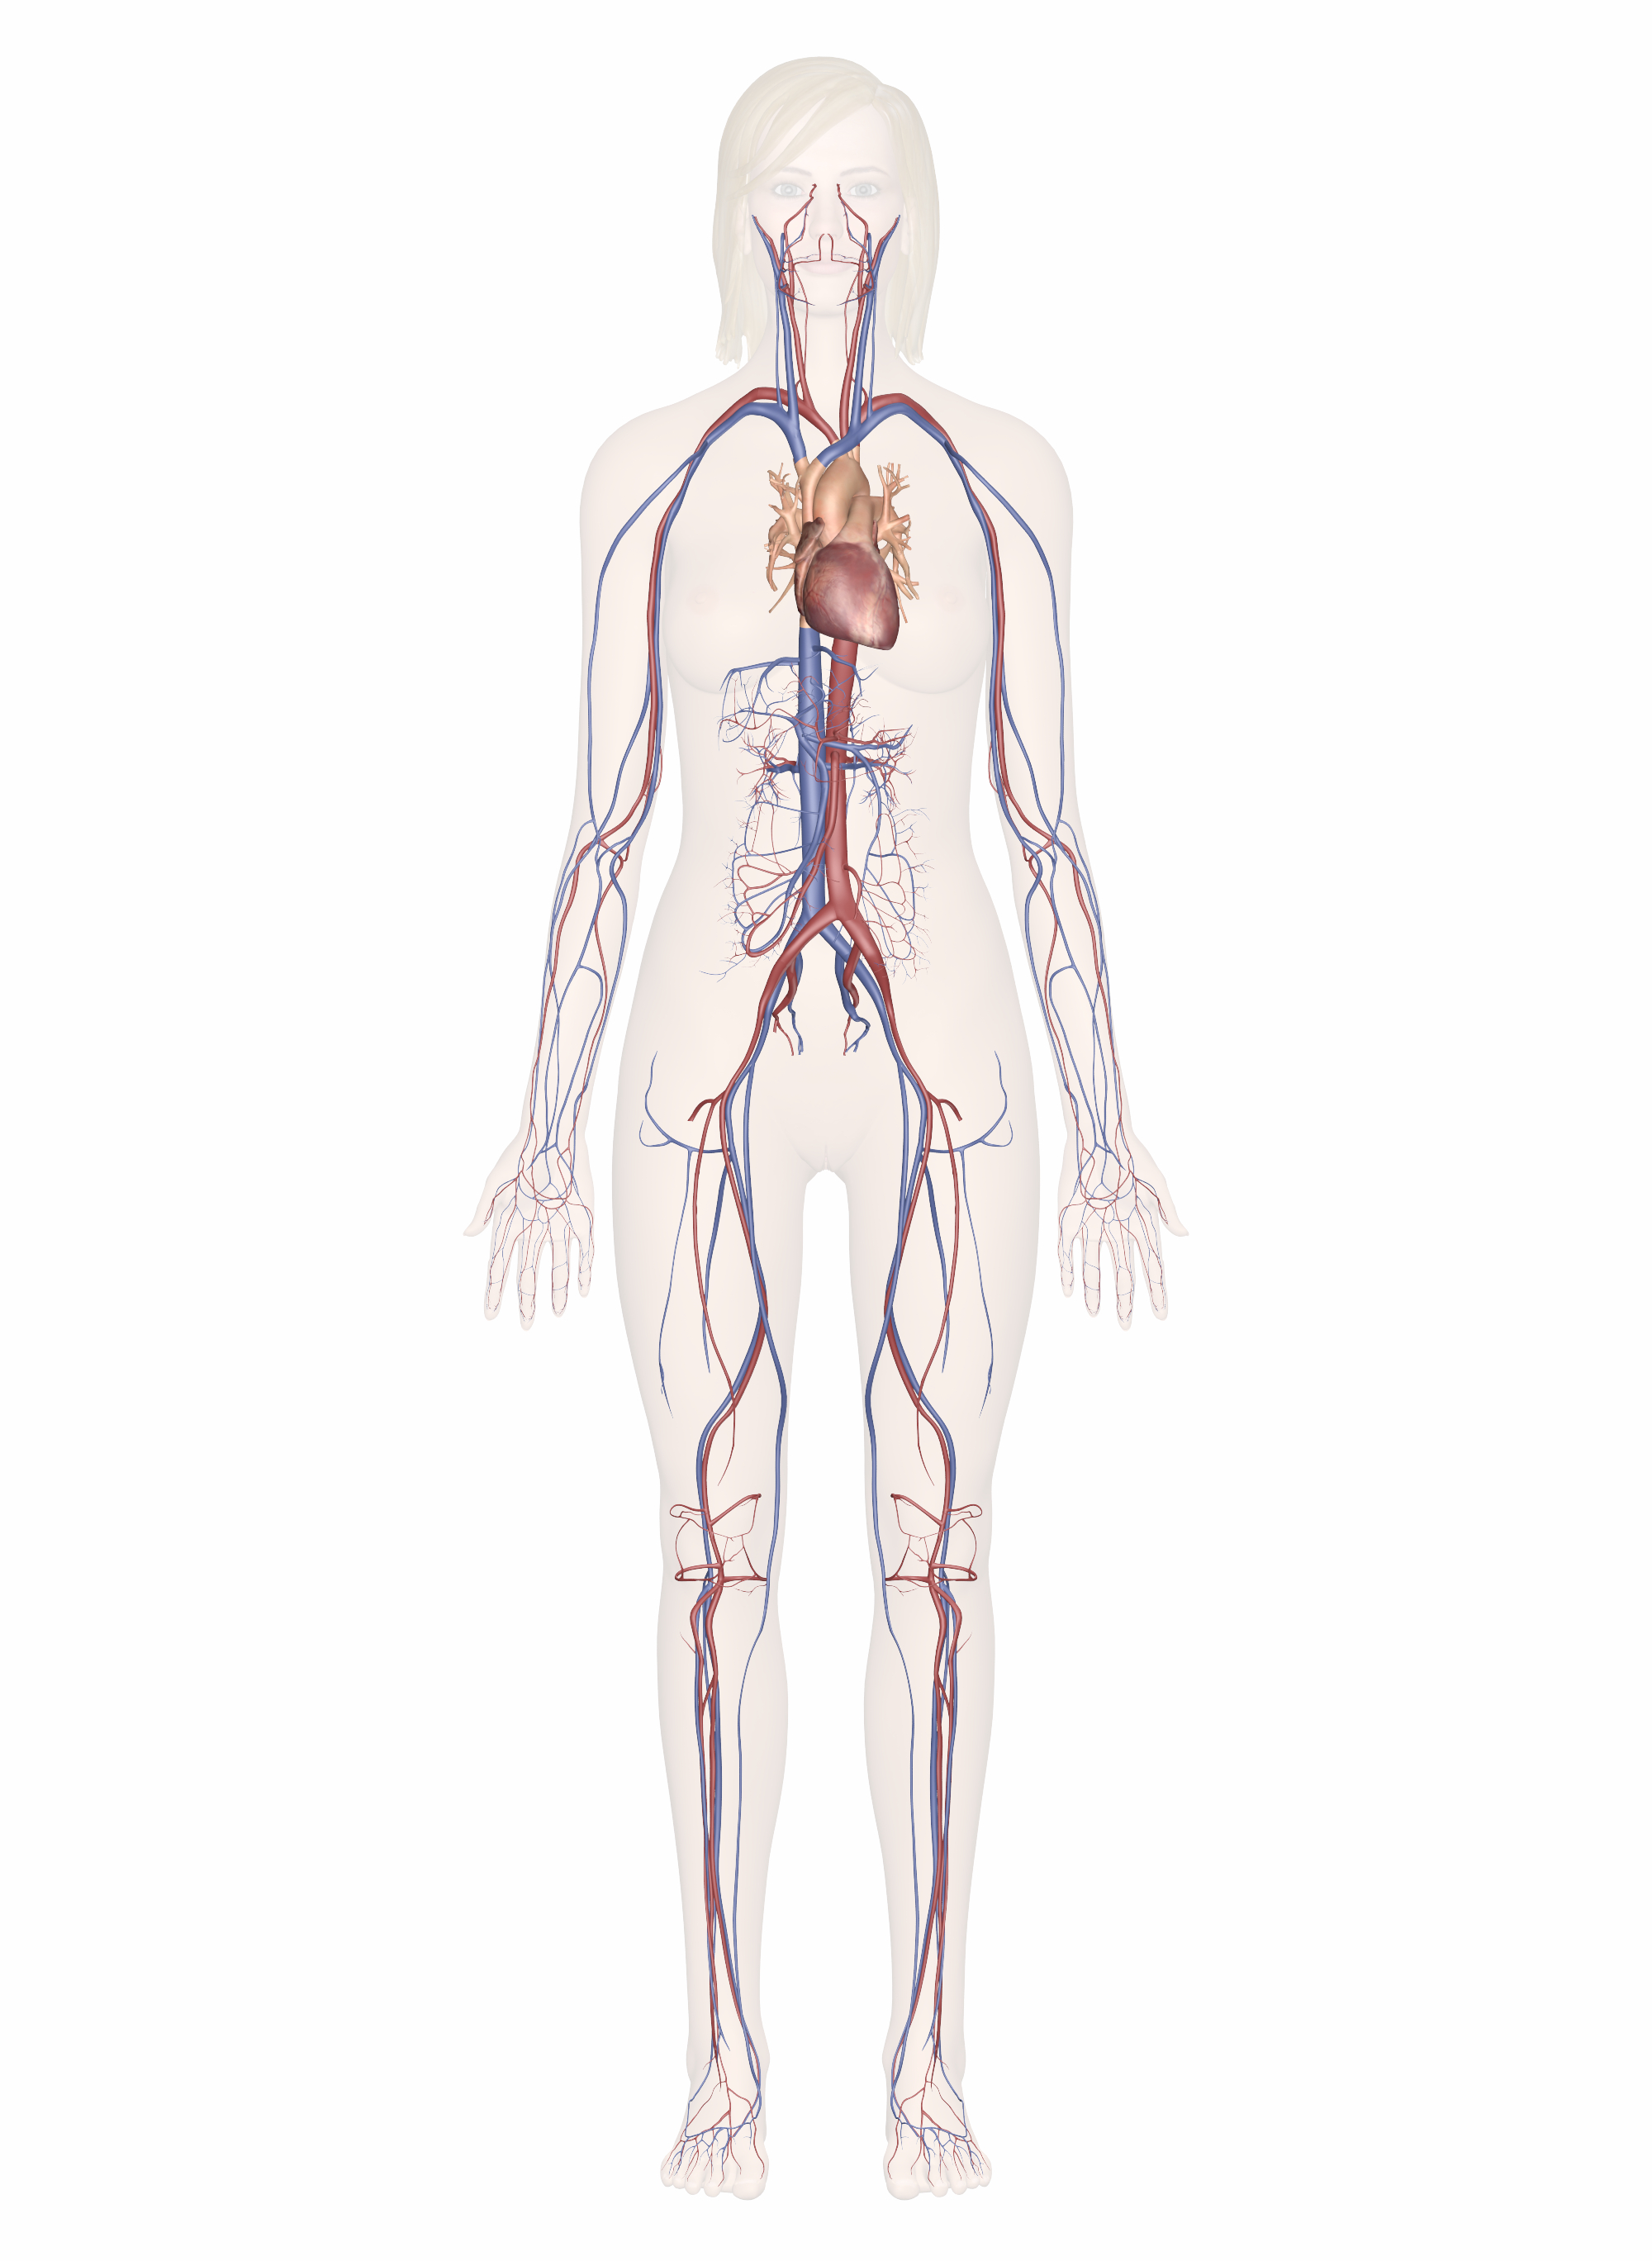 Arteries And Veins Diagram Cardiovascular System Human Veins Arteries Heart